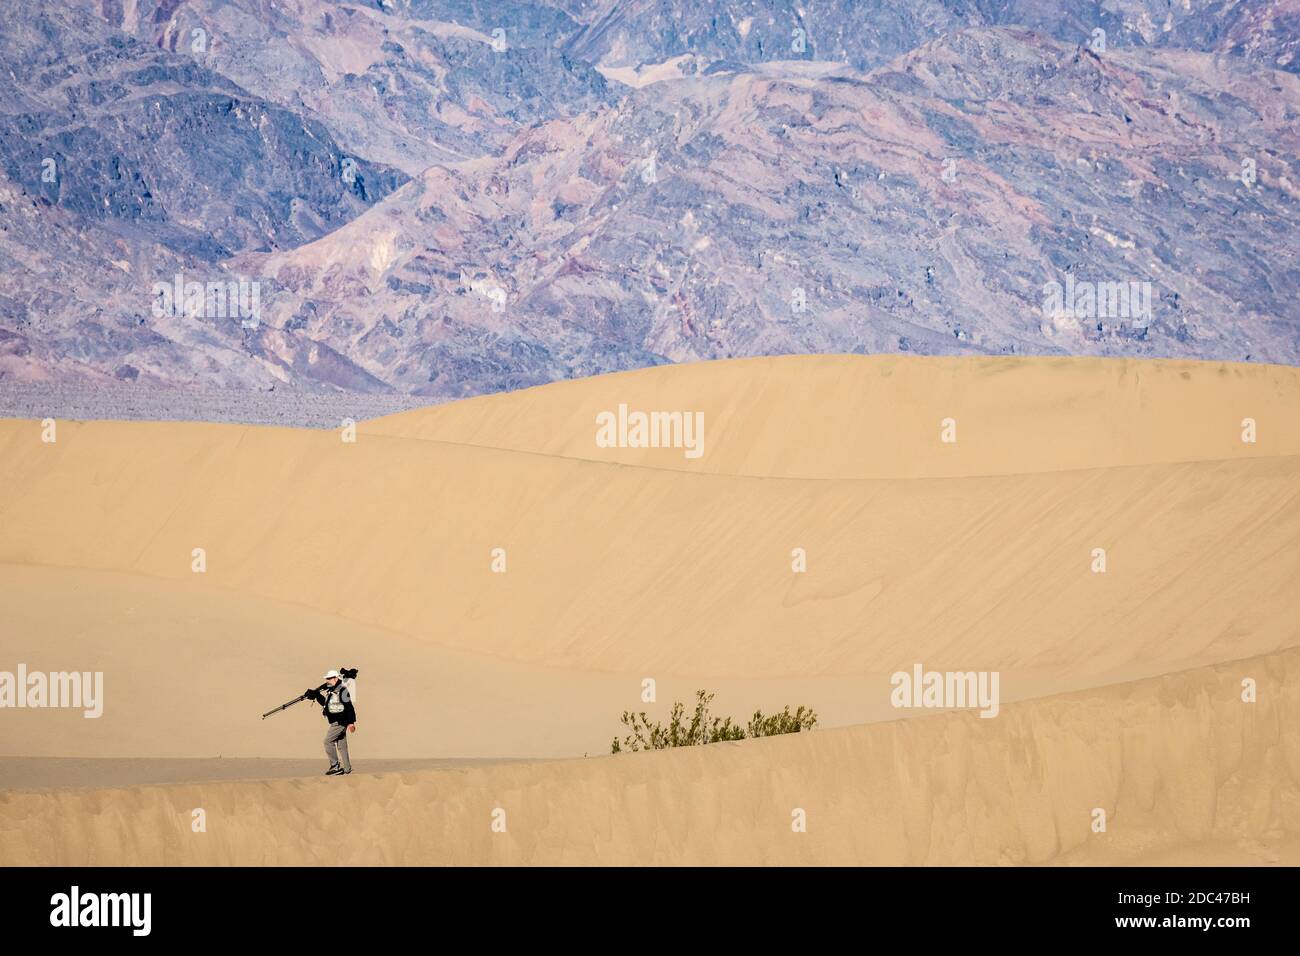 Les dunes de sable de Mesquite Flat sont une vaste zone de dunes de sable bordées de montagnes atteignant 100 pieds et un endroit de choix pour les randonneurs et les photographes. Banque D'Images